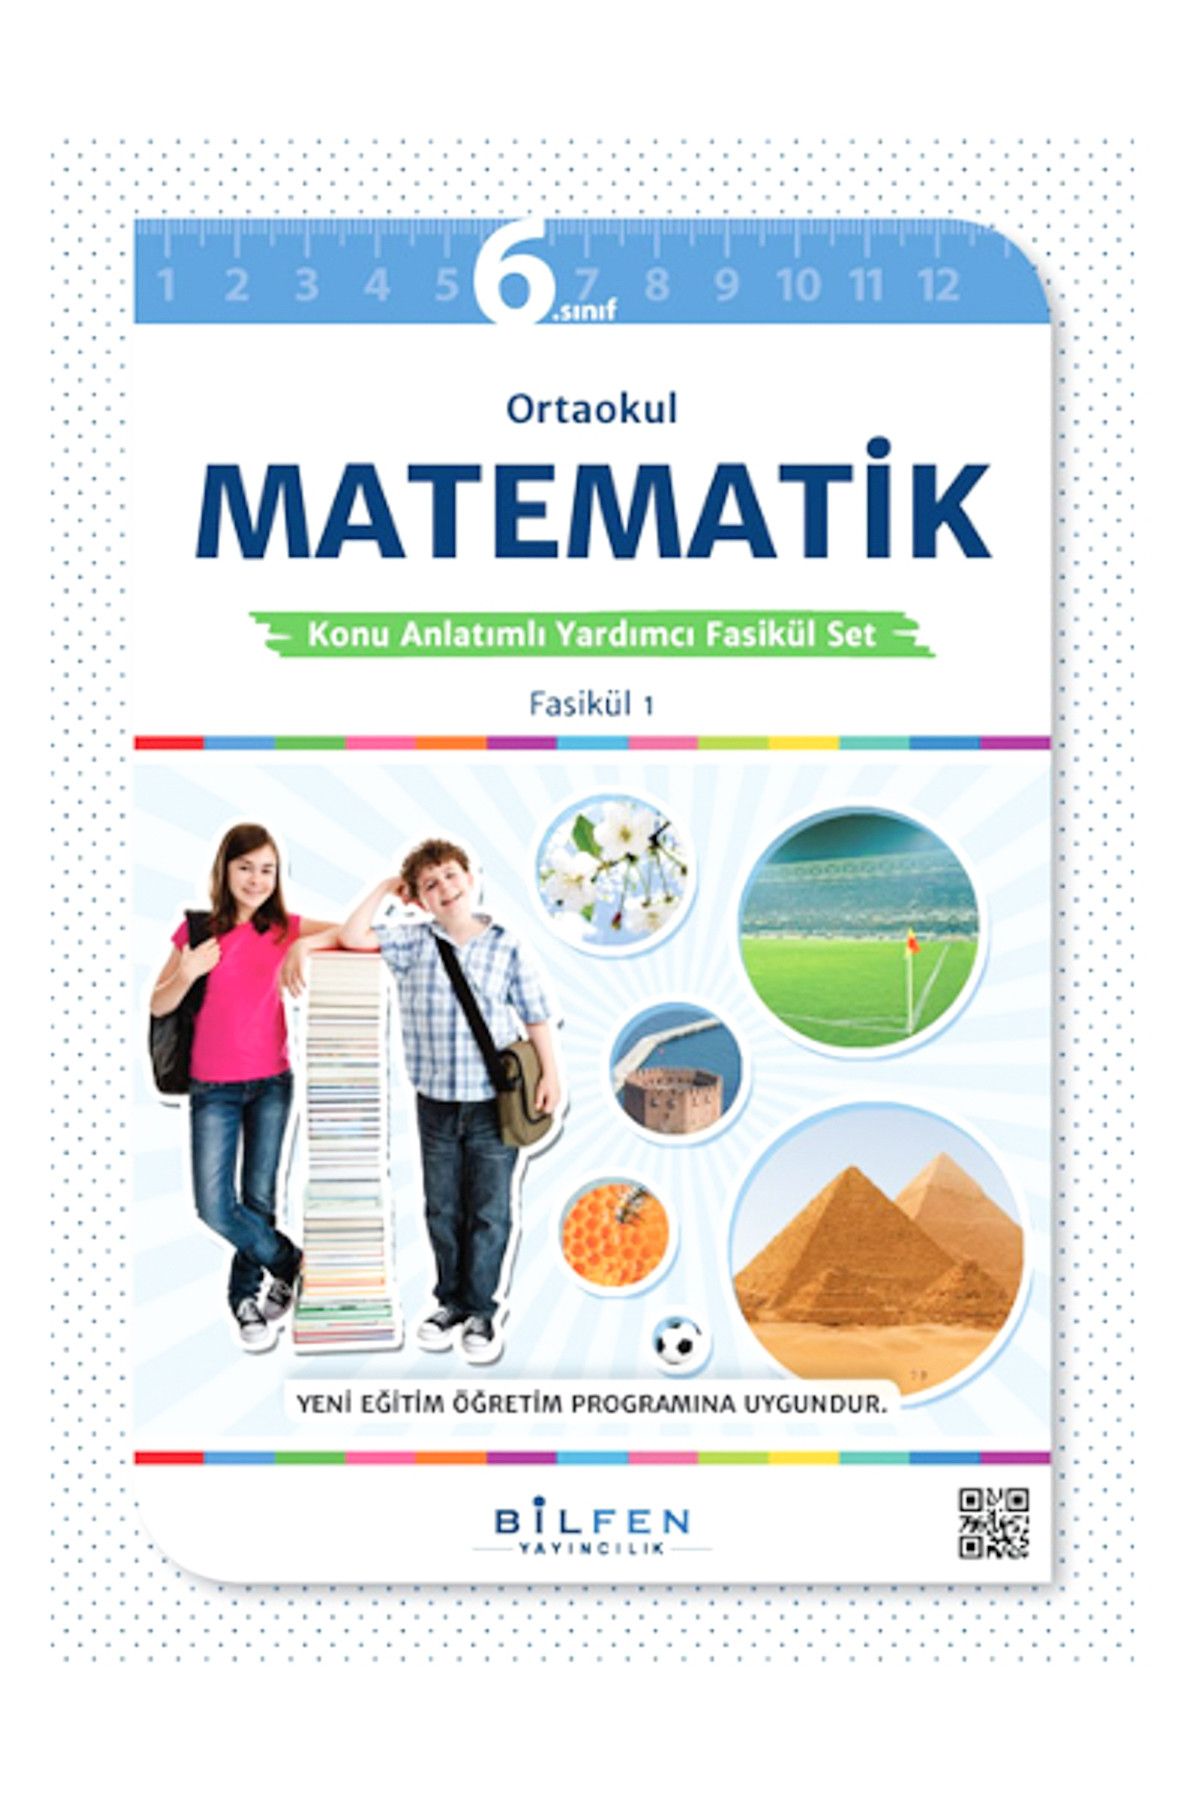 6 Sınıf Matematik Fasikül Set Bilfen Yayıncılık  /_0